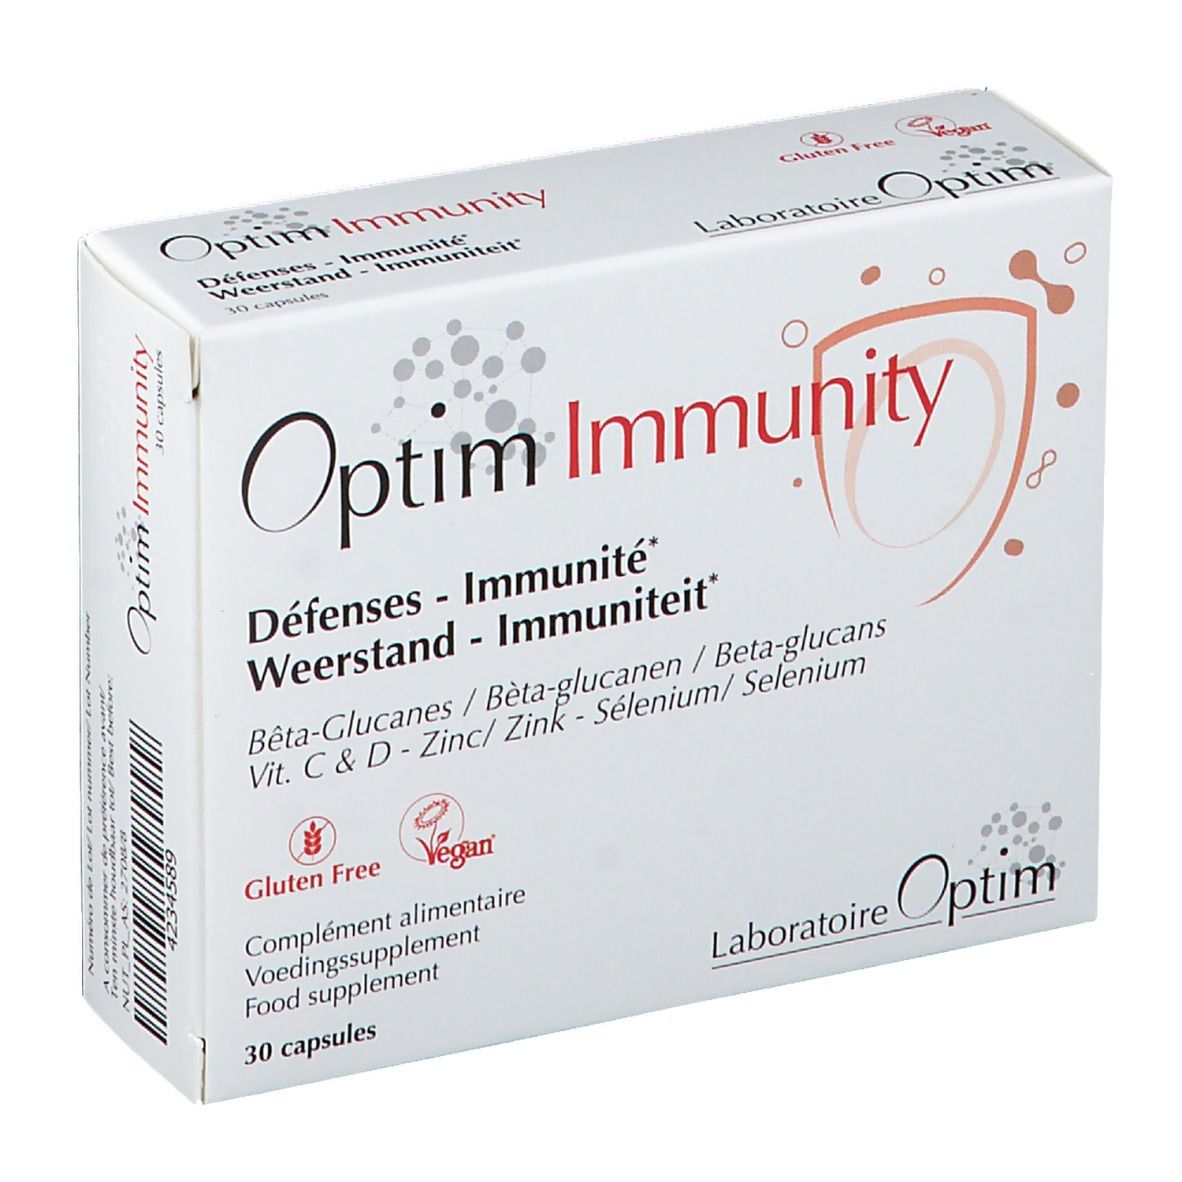 Optim Immunity Défenses - Immunité